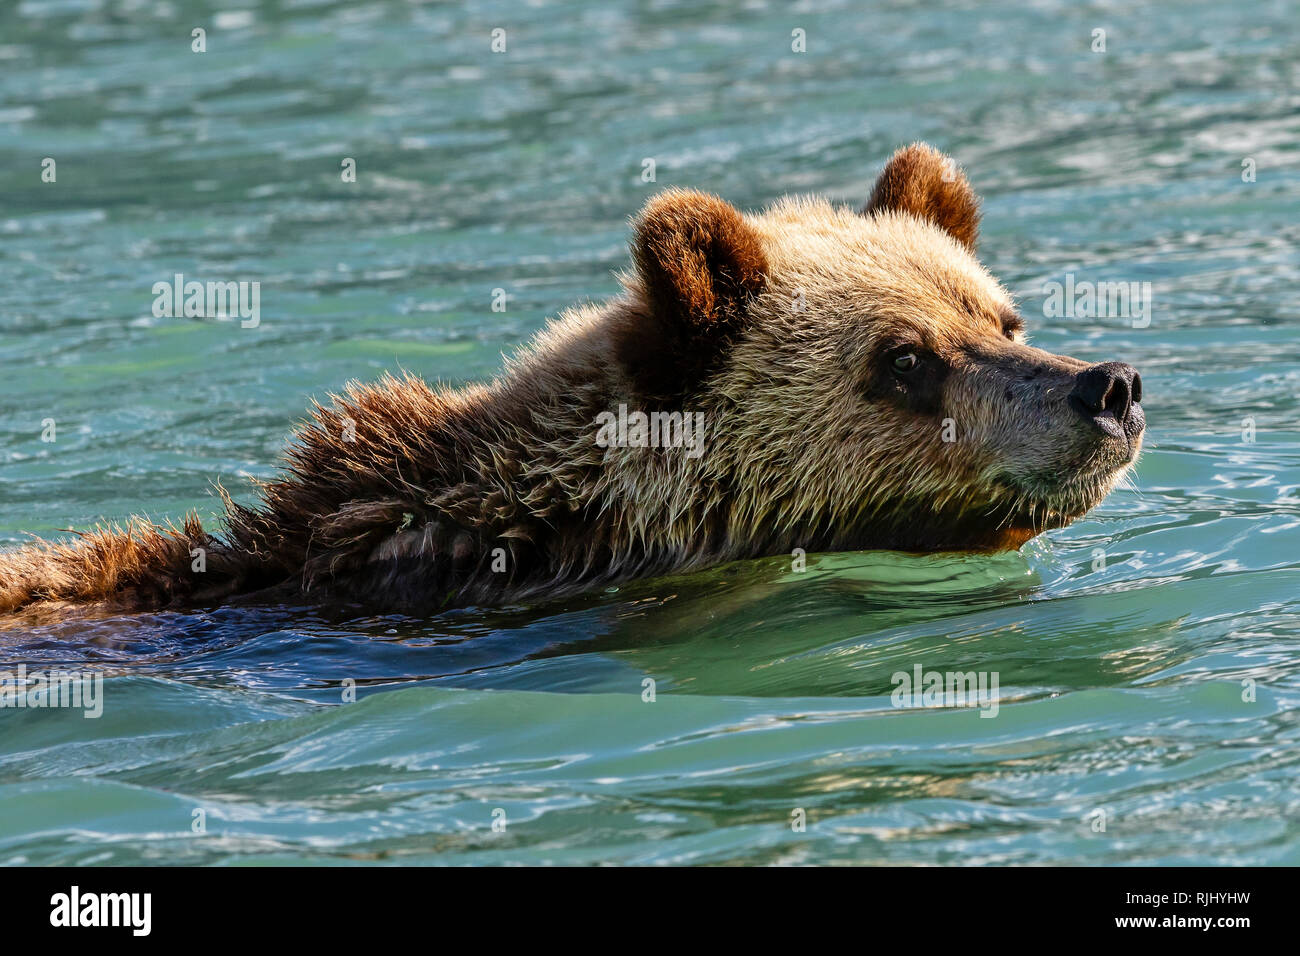 Junge grizzly Bär Schwimmen entlang der Great Bear Rainforest Shoreline, erste Nationen Gebiet, British Columbia, Kanada. Stockfoto